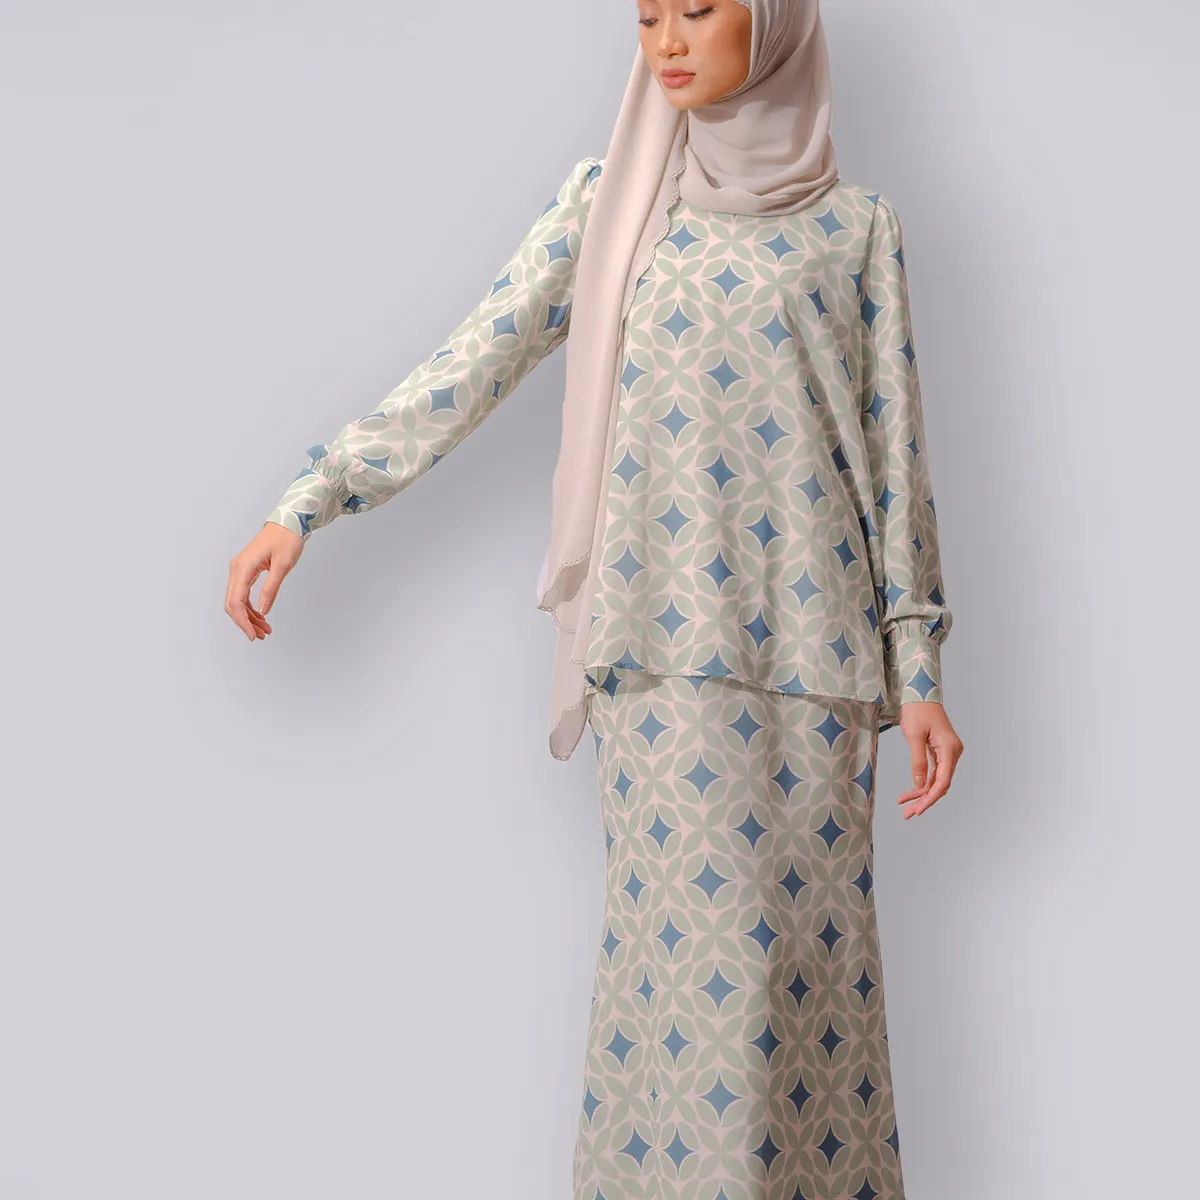 Set Blus Motif Kustom Rok Como Crepe Malaysia Muslim Tudung Wanita Baju Kurung untuk Gamis Terbaru